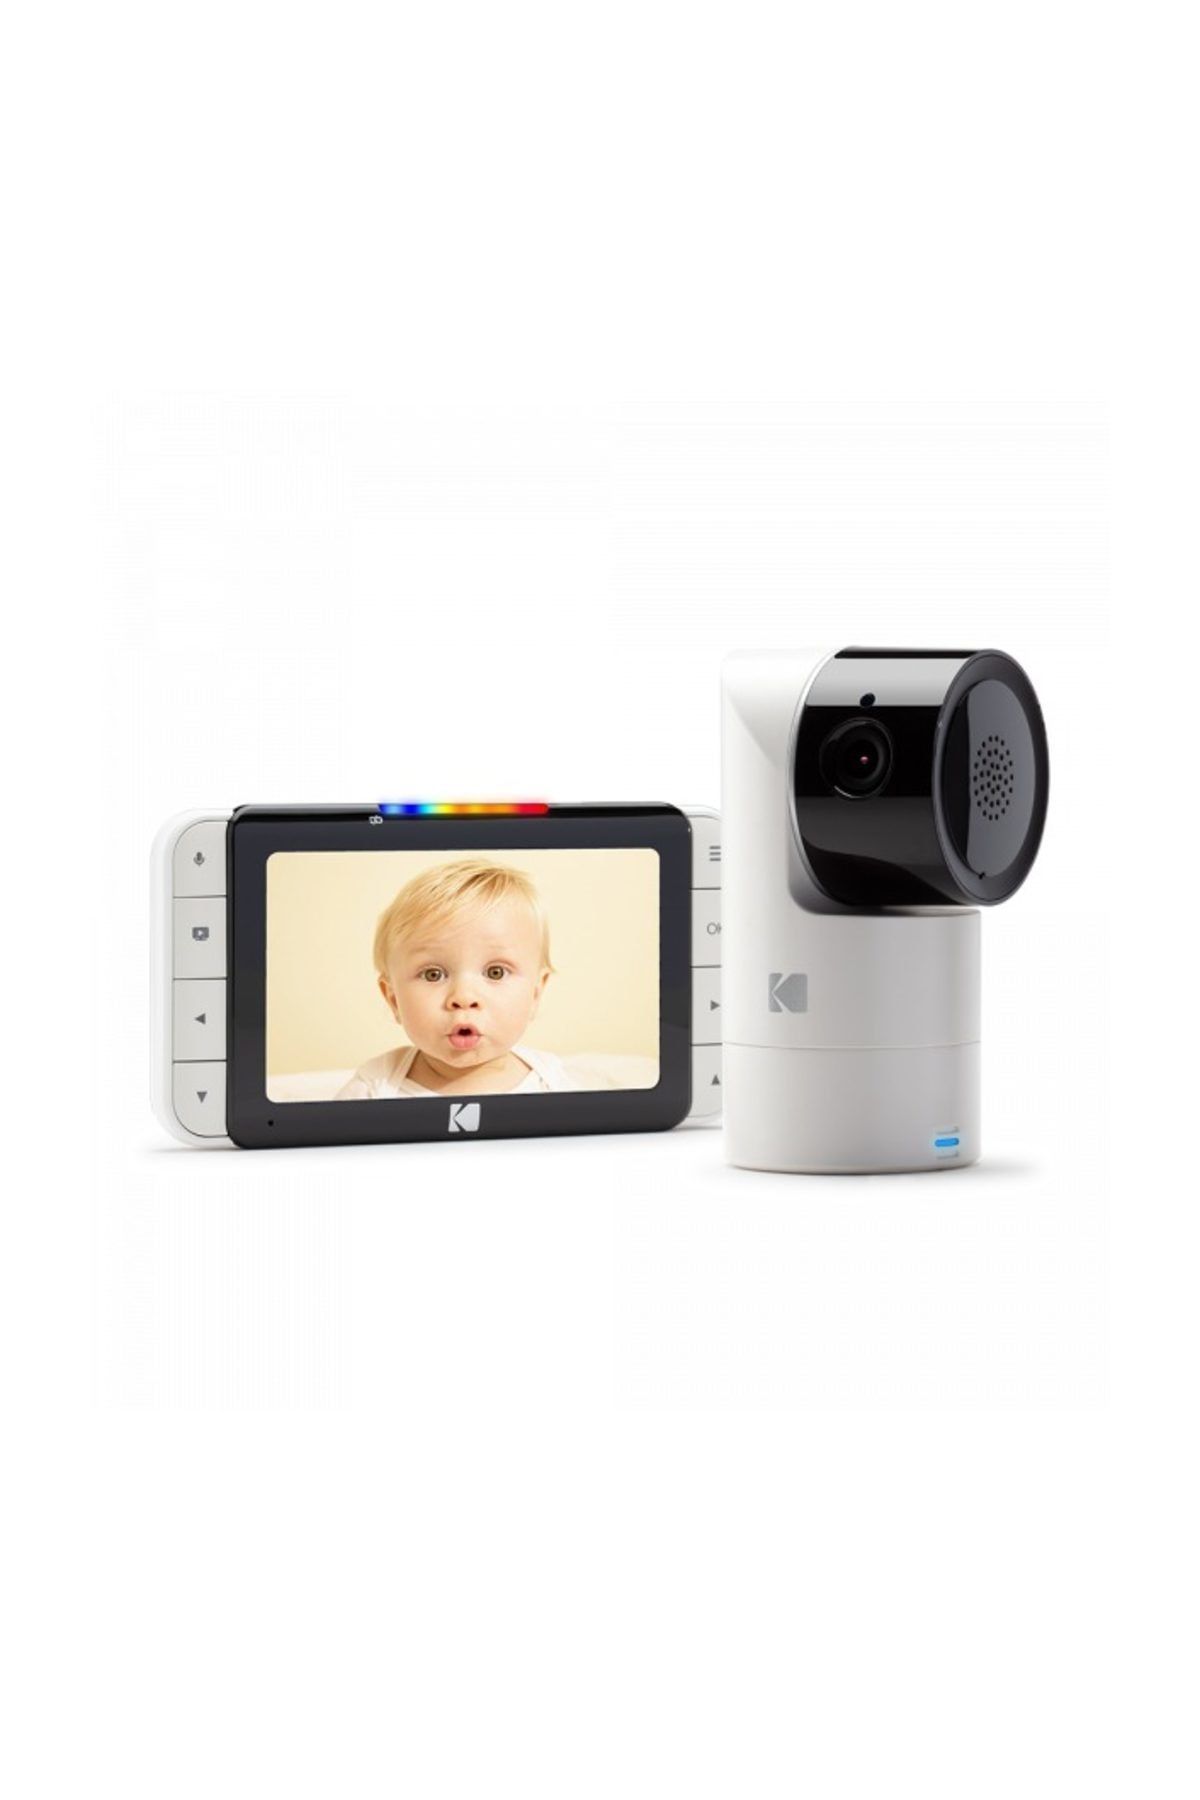 Kodak CHERISH C525 - Akıllı Video Bebek Monitörü 5.0 inç LCD Ekran Ebeveyn Ünitesi